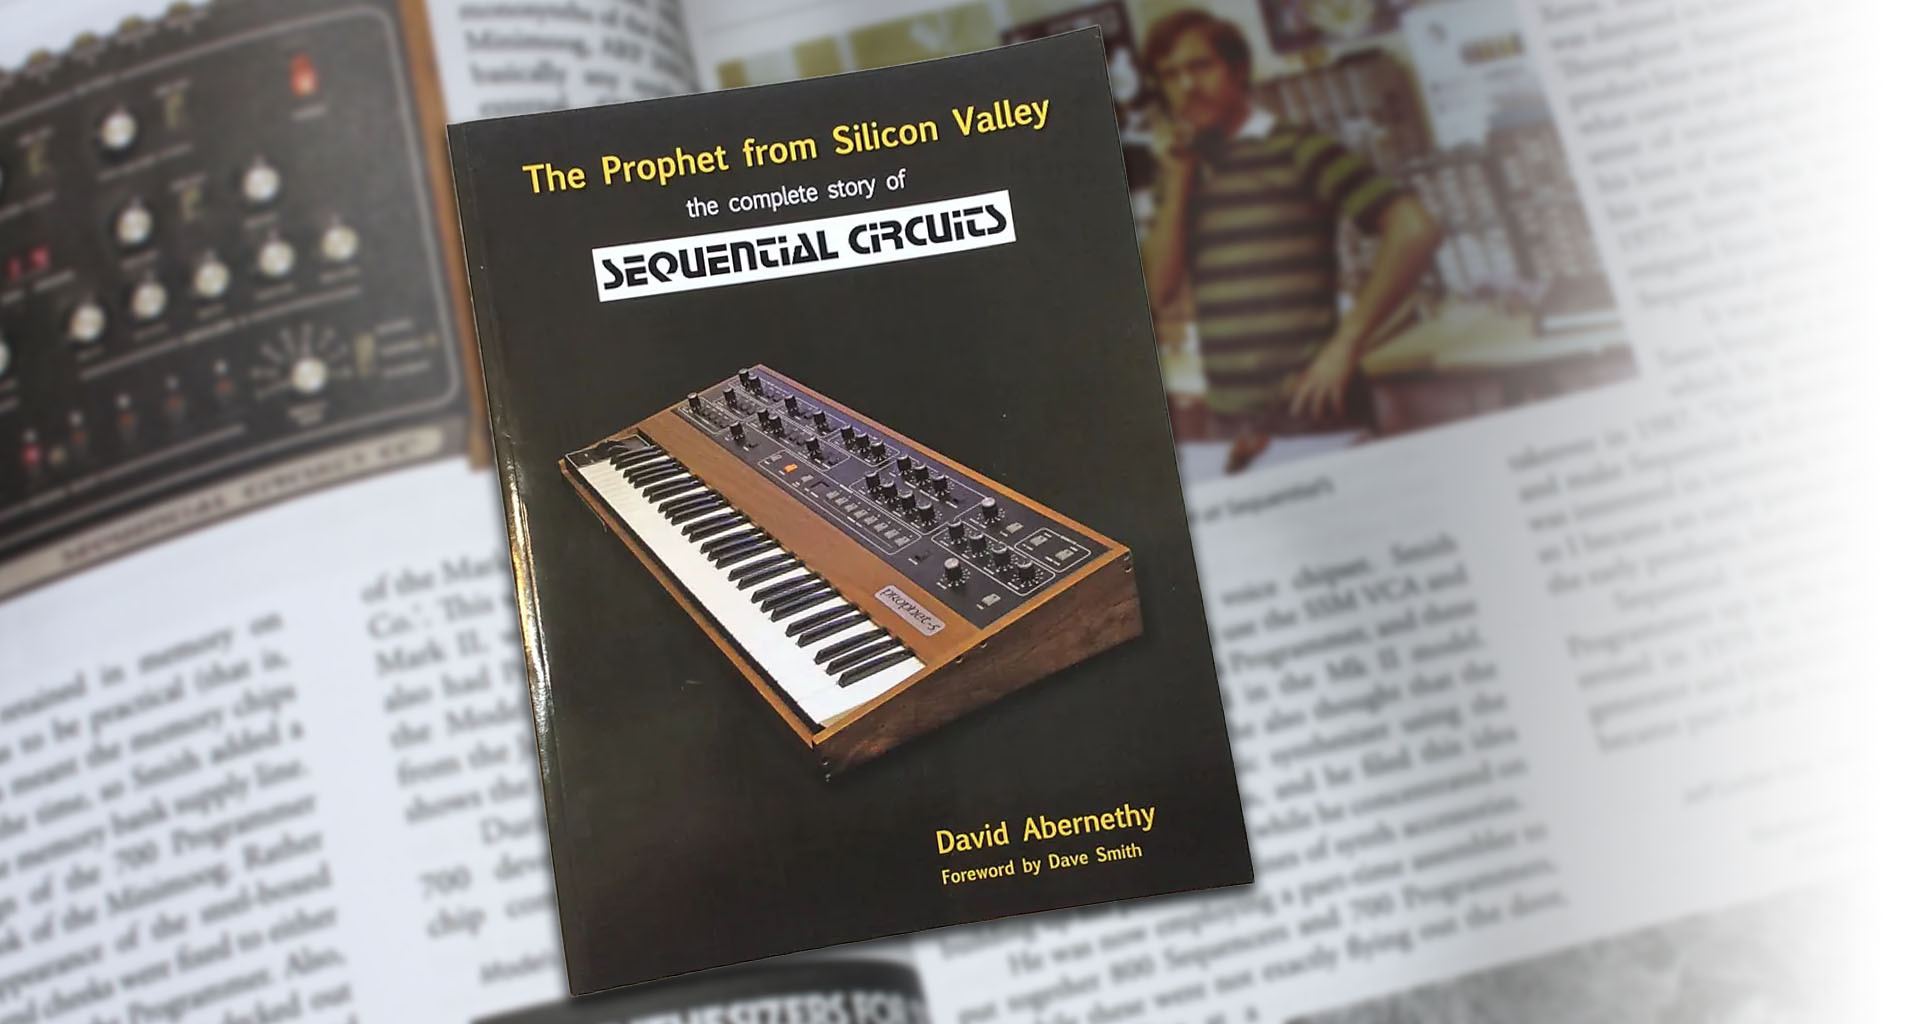 La apasionante historia de Sequential Circuits y muchos sintetizadores de Dave Smith, con todo detalle en este maravilloso libro